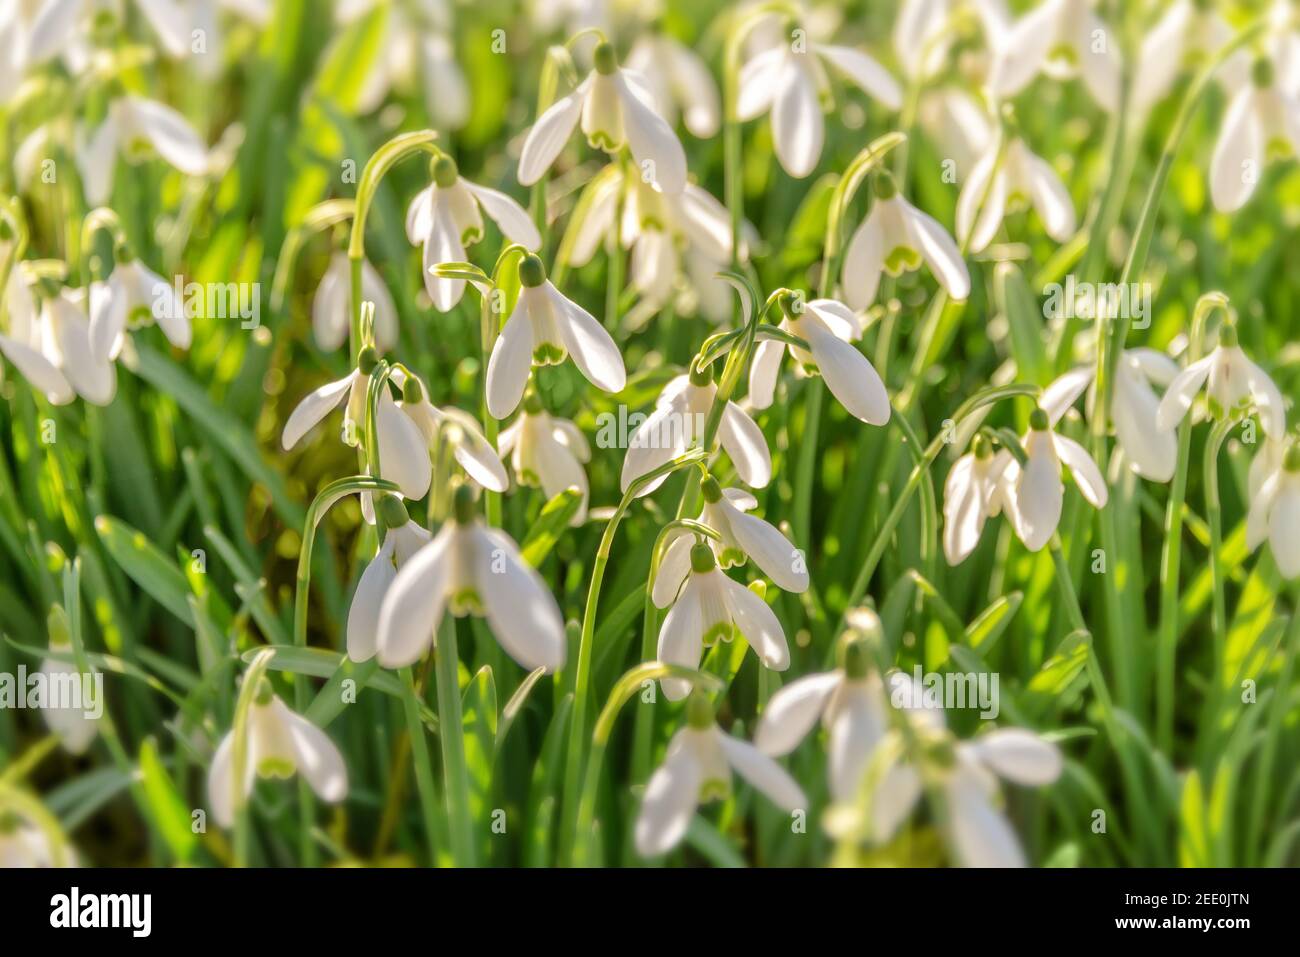 Snowdrop fiori (Galanthus nivalis) nell'erba all'inizio della primavera Foto Stock